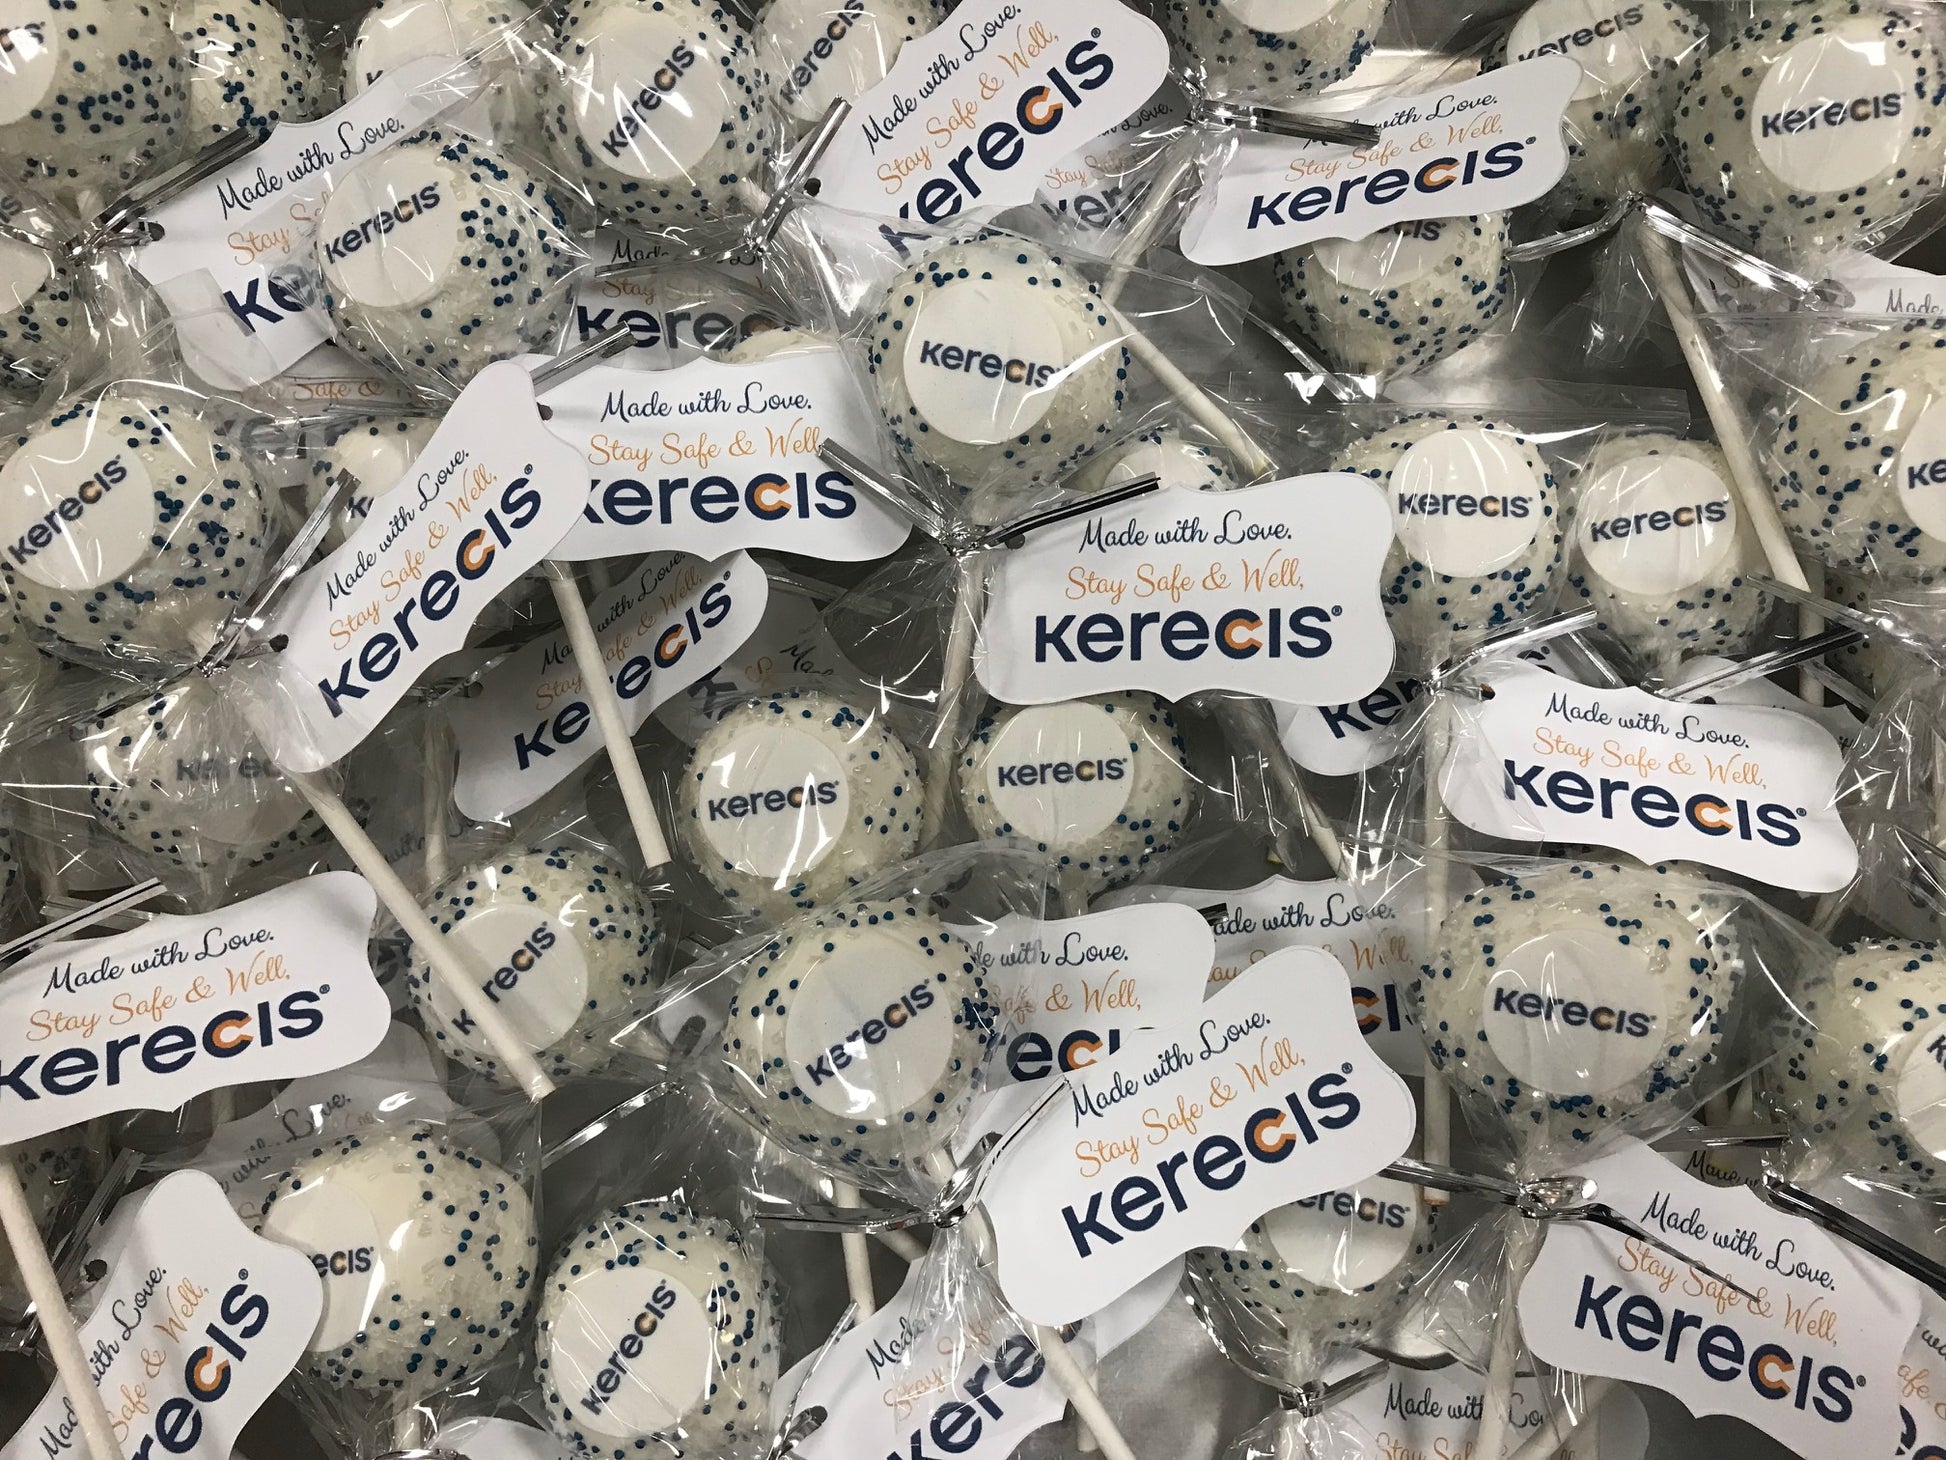 Kerecis Company Cake Pops (Special Item for Kerecis Sales Staff) - Candy's Cake Pops